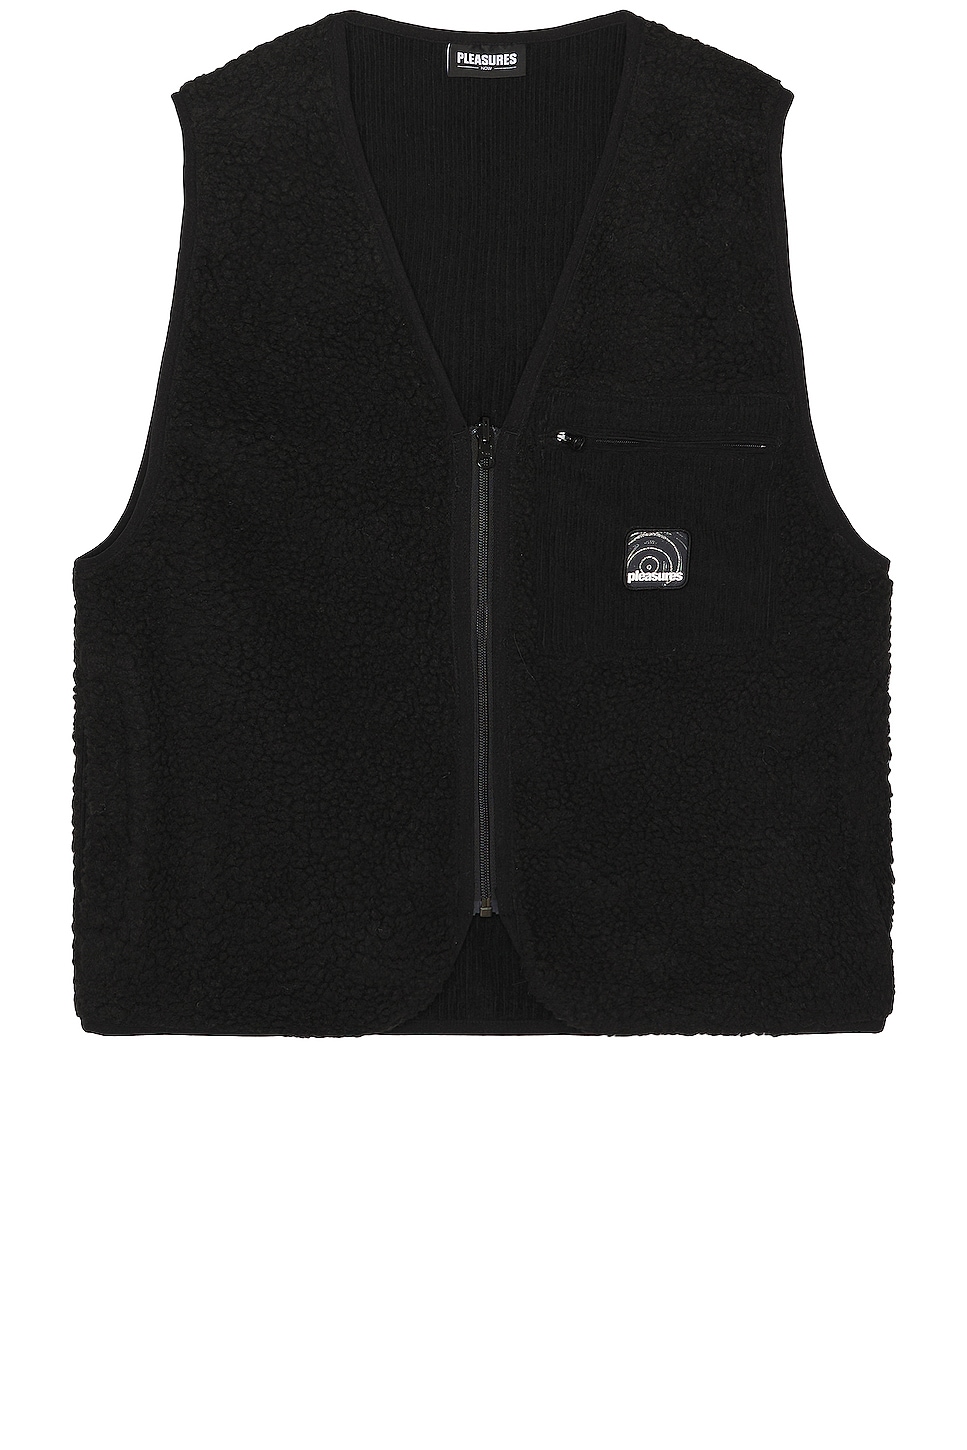 Image 1 of Pleasures Infinite Sherpa Fleece Reversible Vest in Black